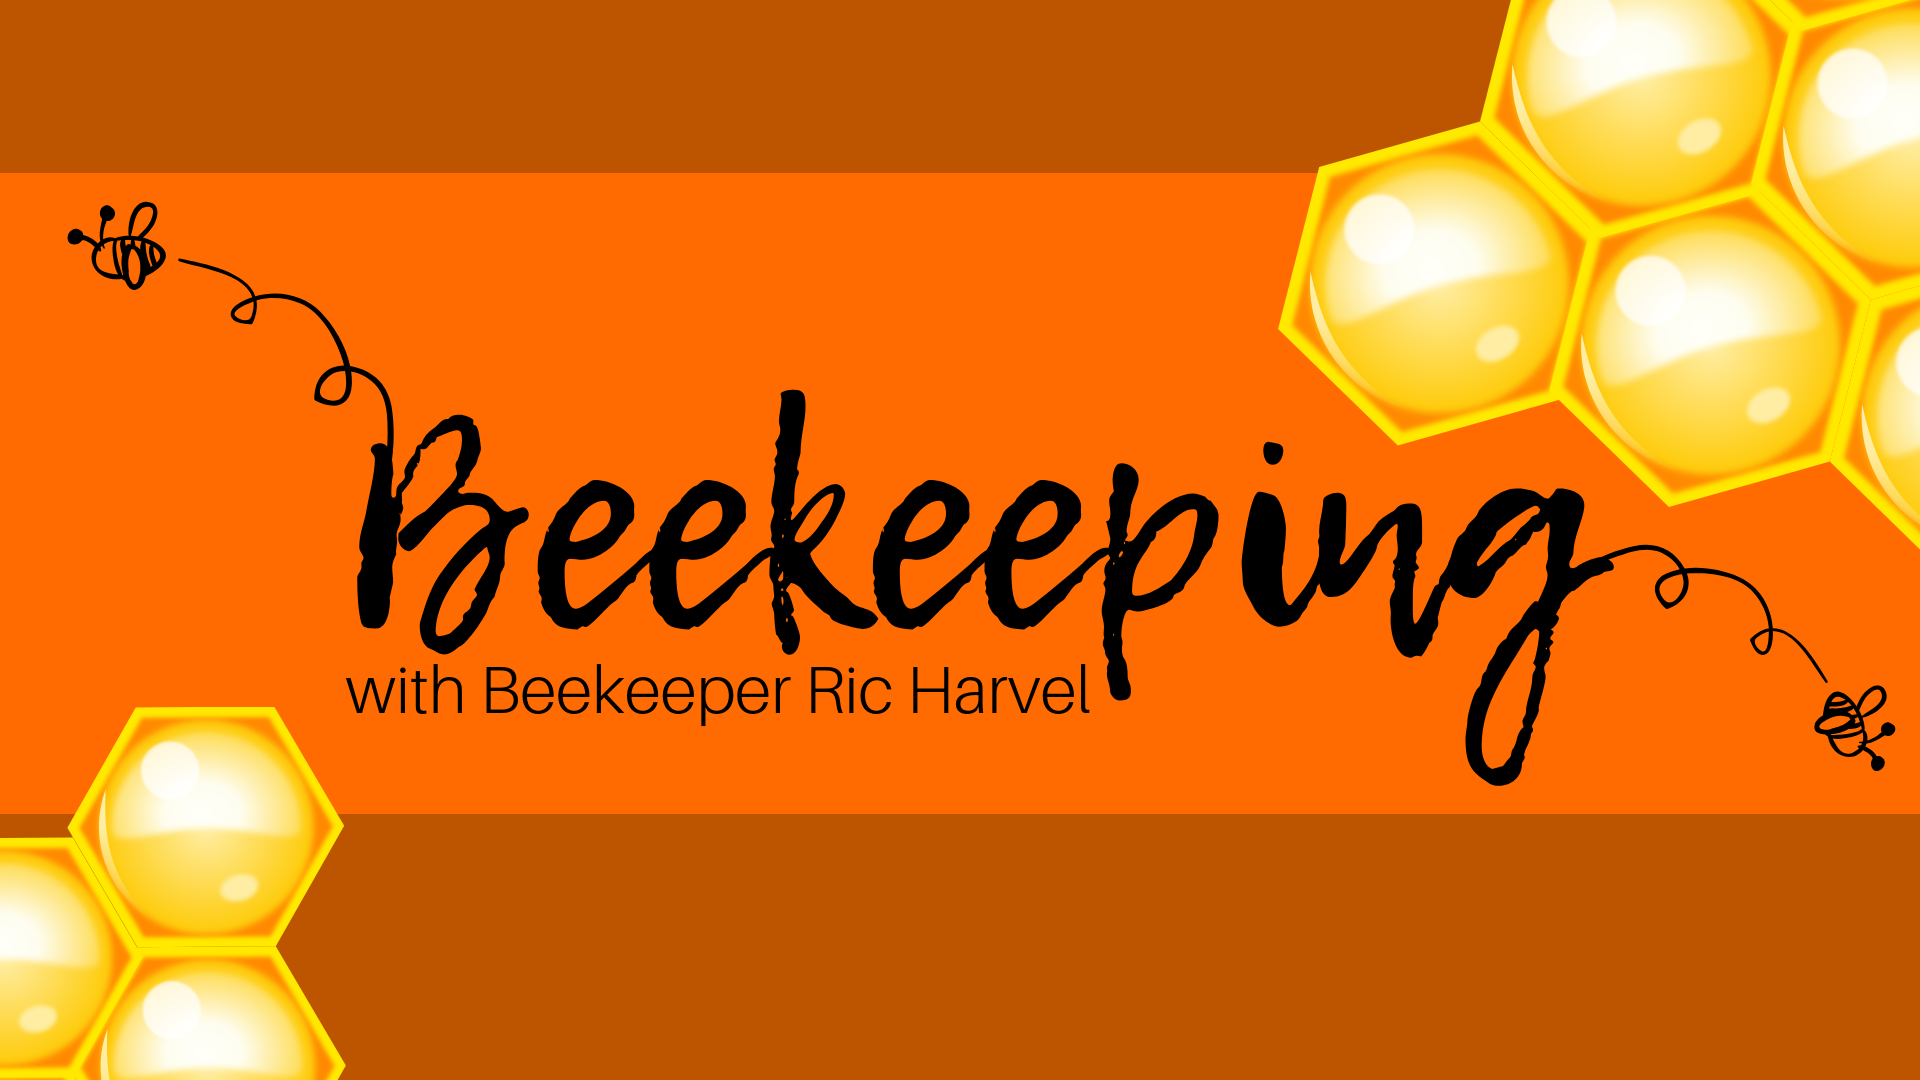 Beekeeping with Beekeeper Ric Harvel